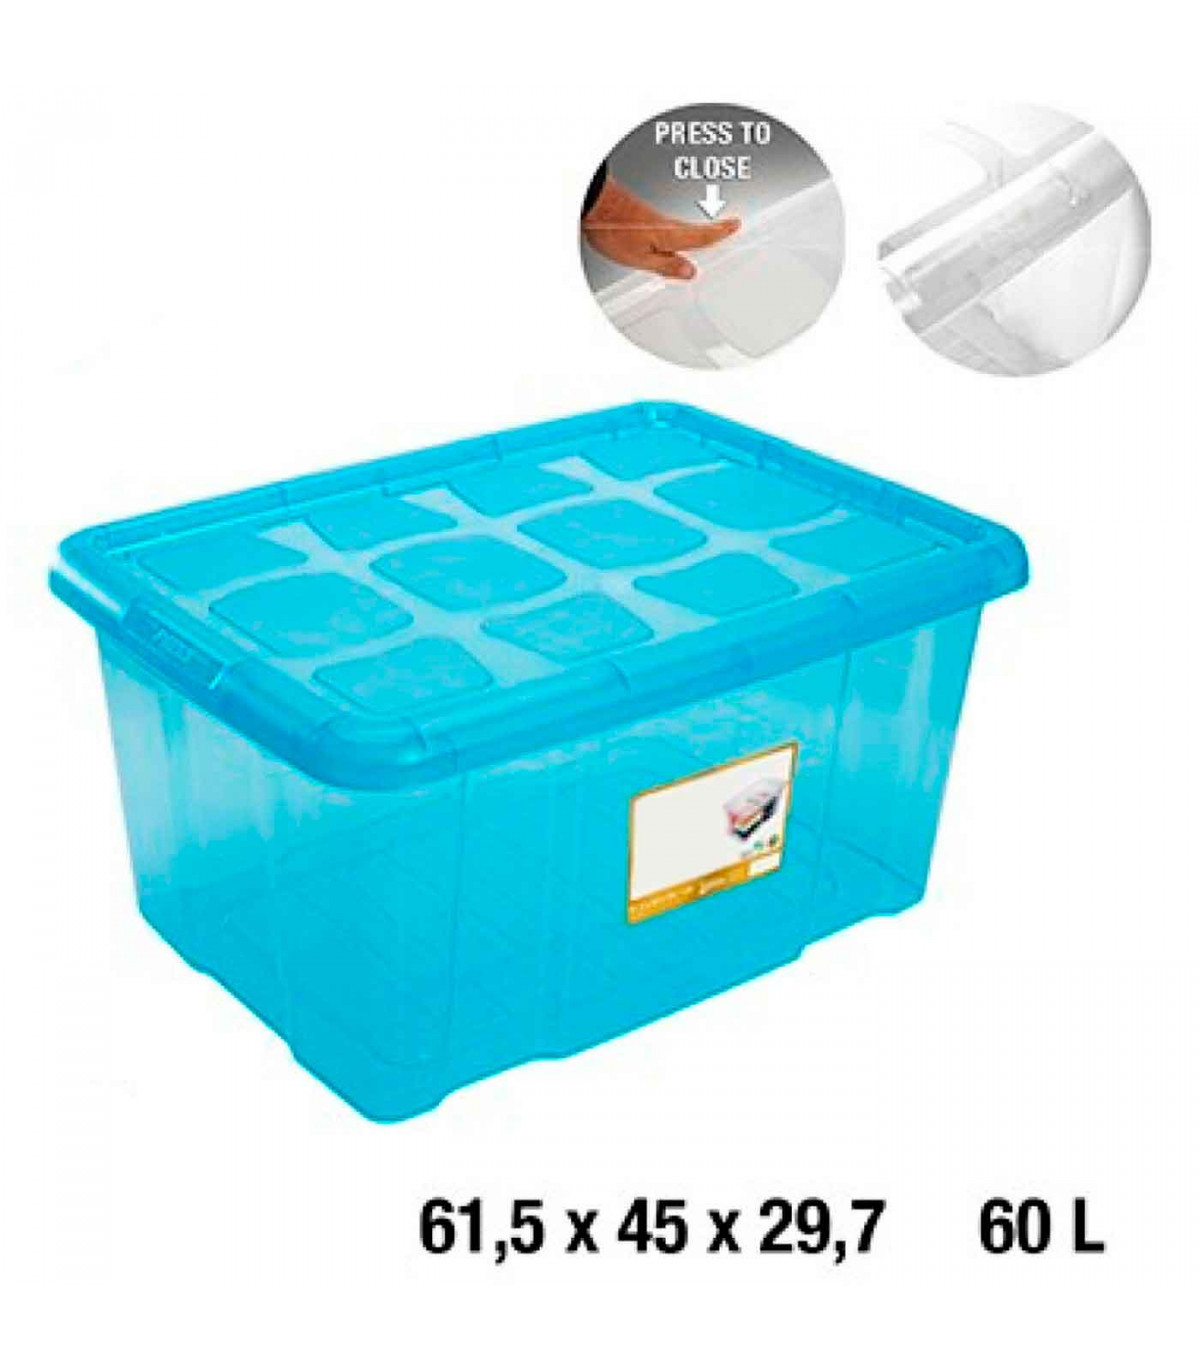 Caja almacenaje con tapa, plástico translúcido, cajón multiusos